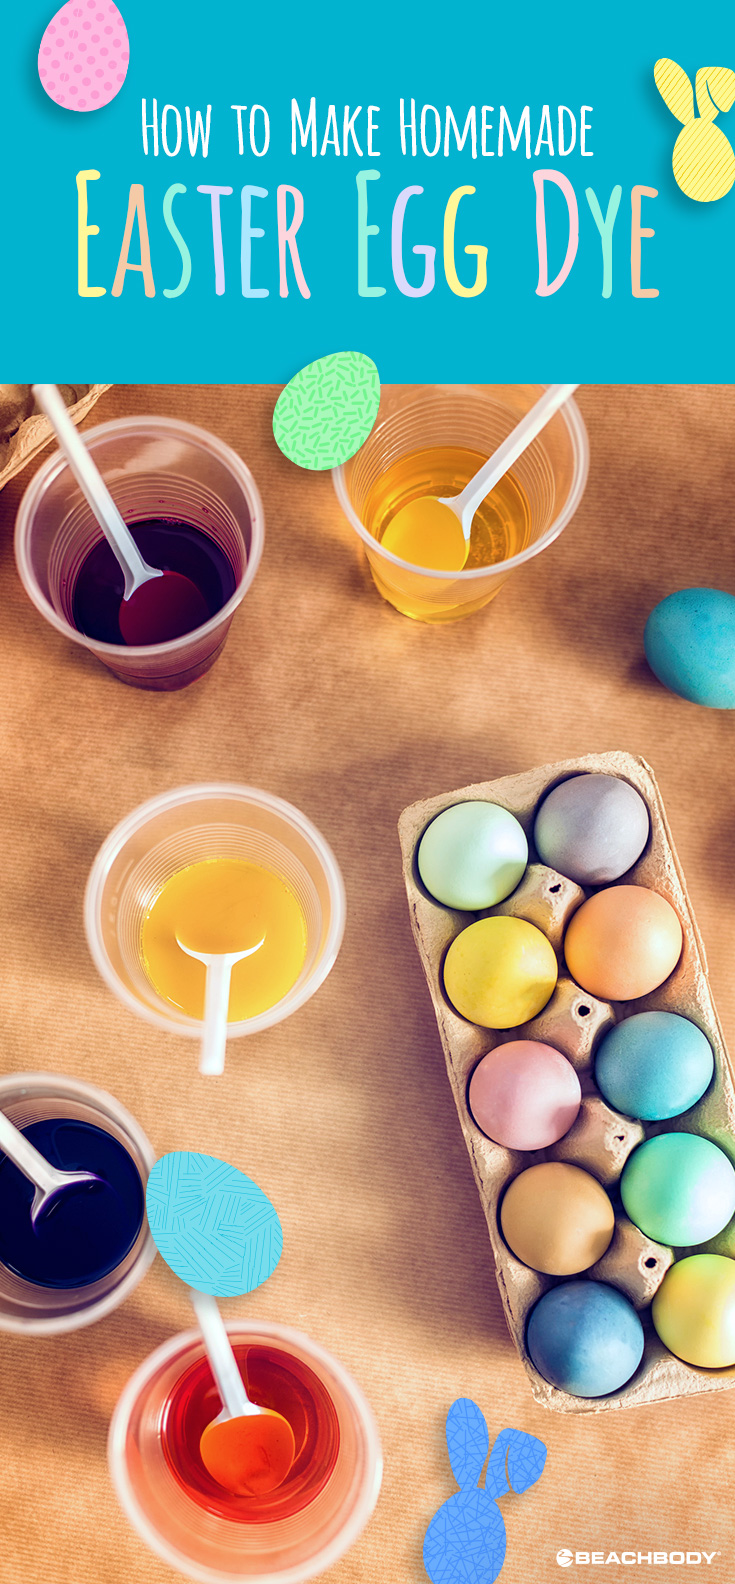 How to Make Homemade Easter Egg Dye